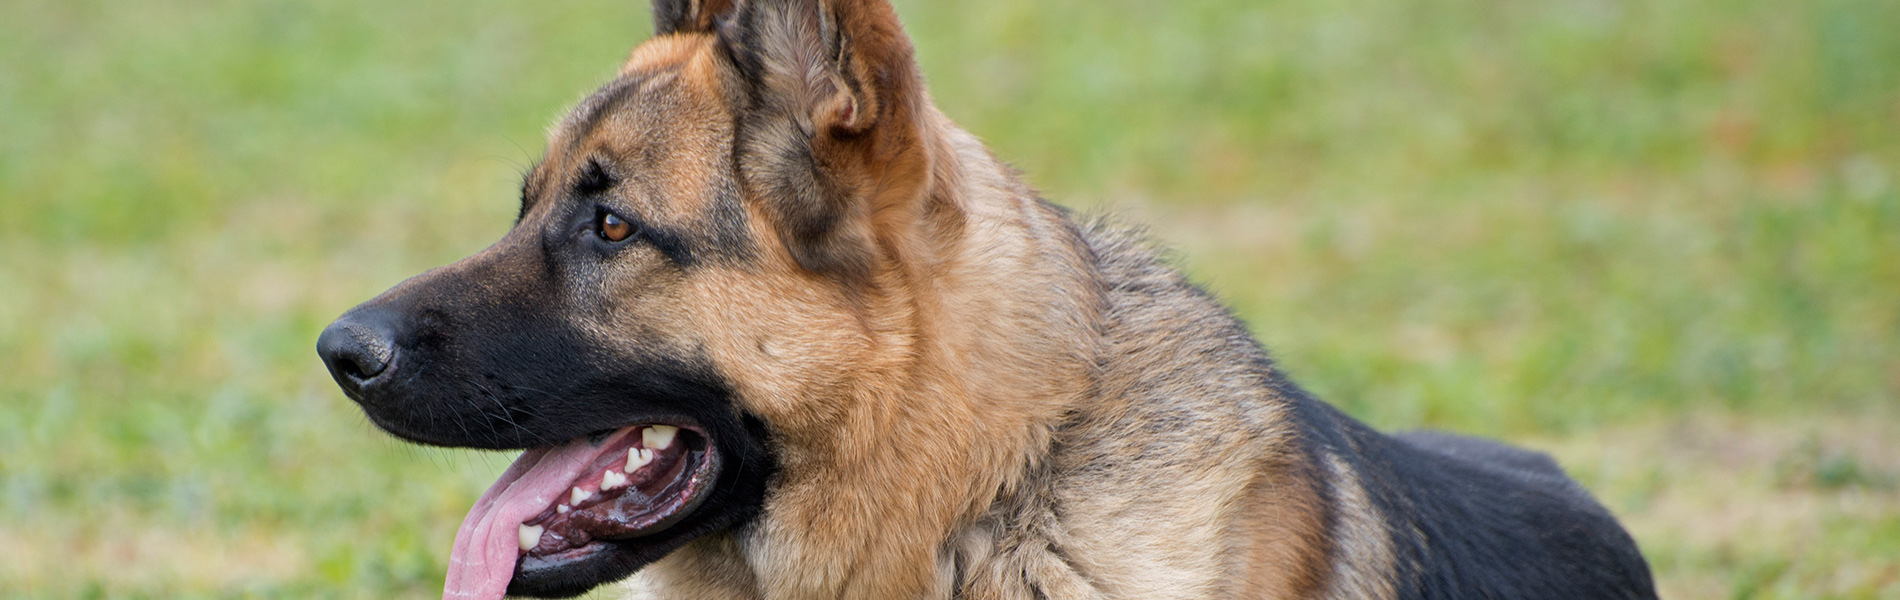 Gradlyn Petshipping tiertransport Header referenz polizeihund